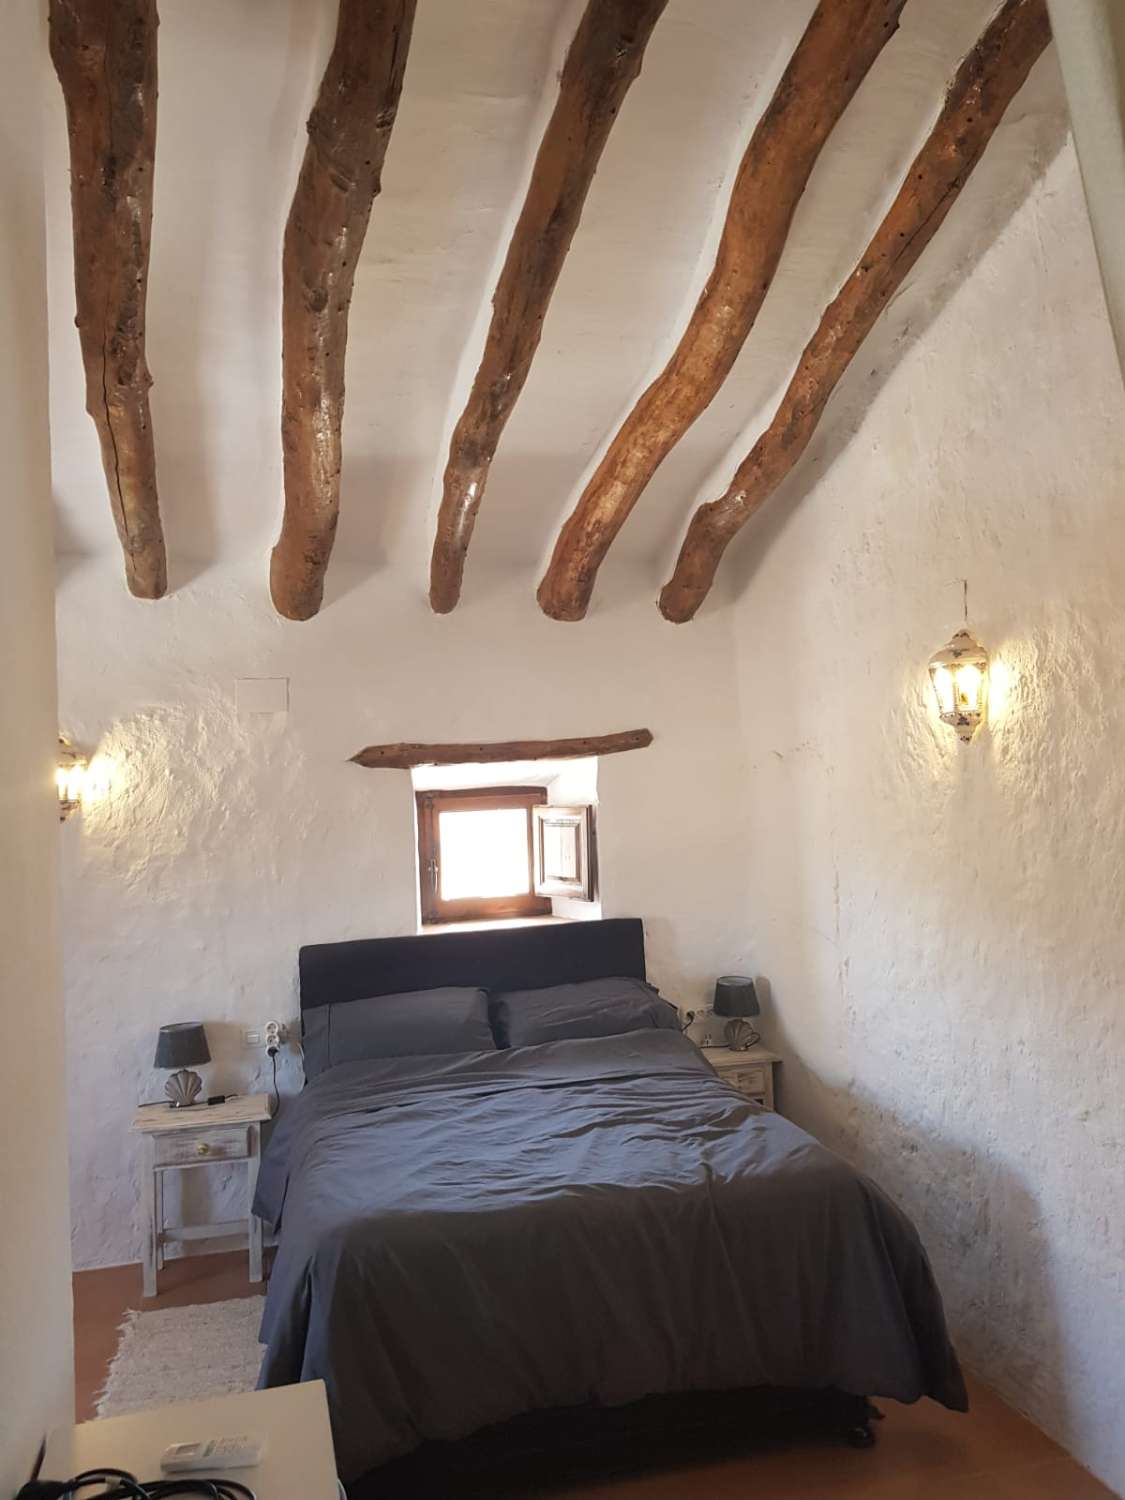 Wunderschön restauriertes großes, altes Cortijo mit 6 Schlafzimmern, 6 Bädern und Pool, ideal für Bed & Breakfast/ländlichen Tourismus